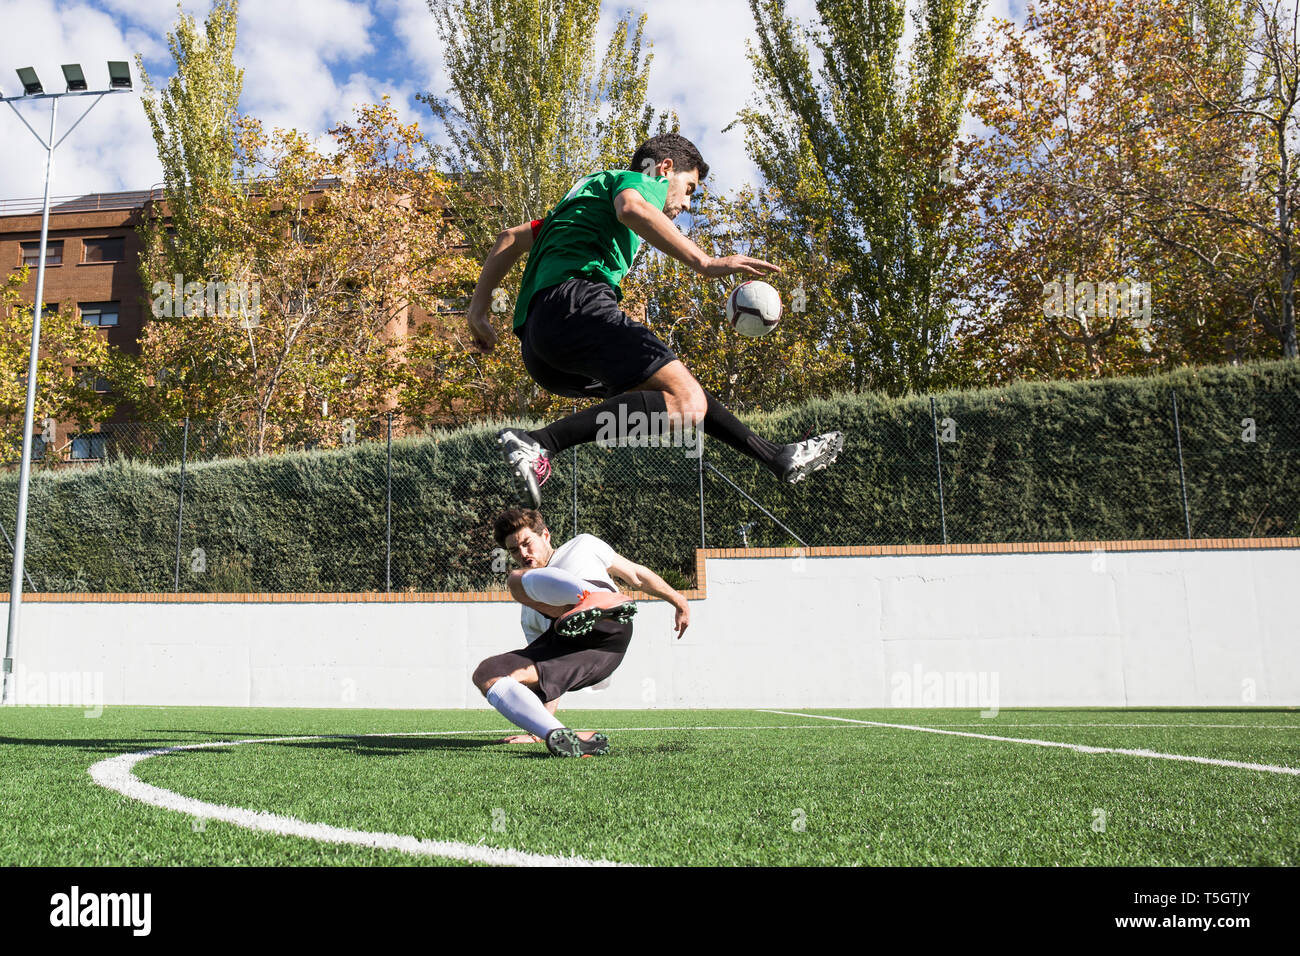 Bestimmt fußball Spieler kicken Kugel auf Feld overjumping Player auf dem Boden Stockfoto